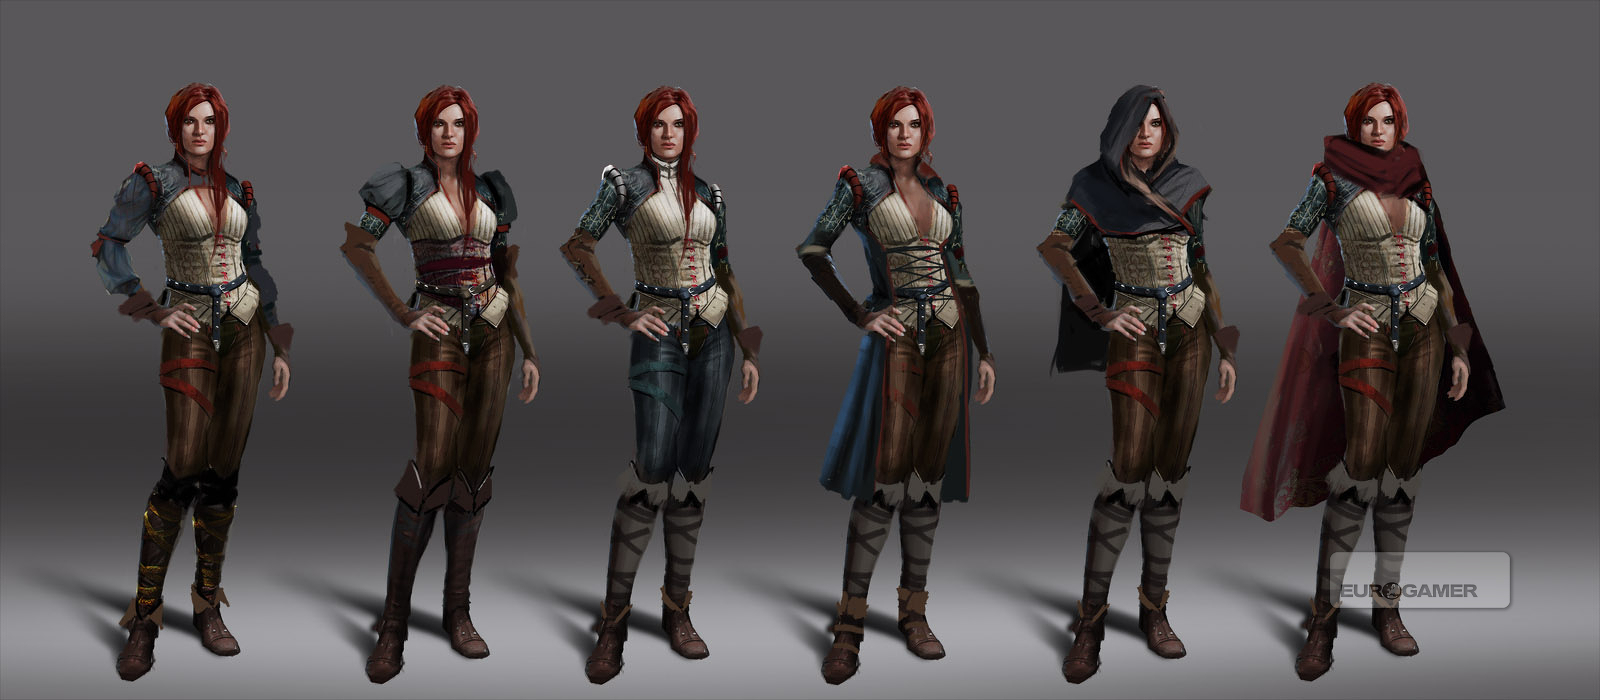 シリの初期デザインやトリスの衣装など The Witcher 3 の貴重な未公開アートワークとレンダーイメージが公開 Doope 国内外のゲーム情報サイト